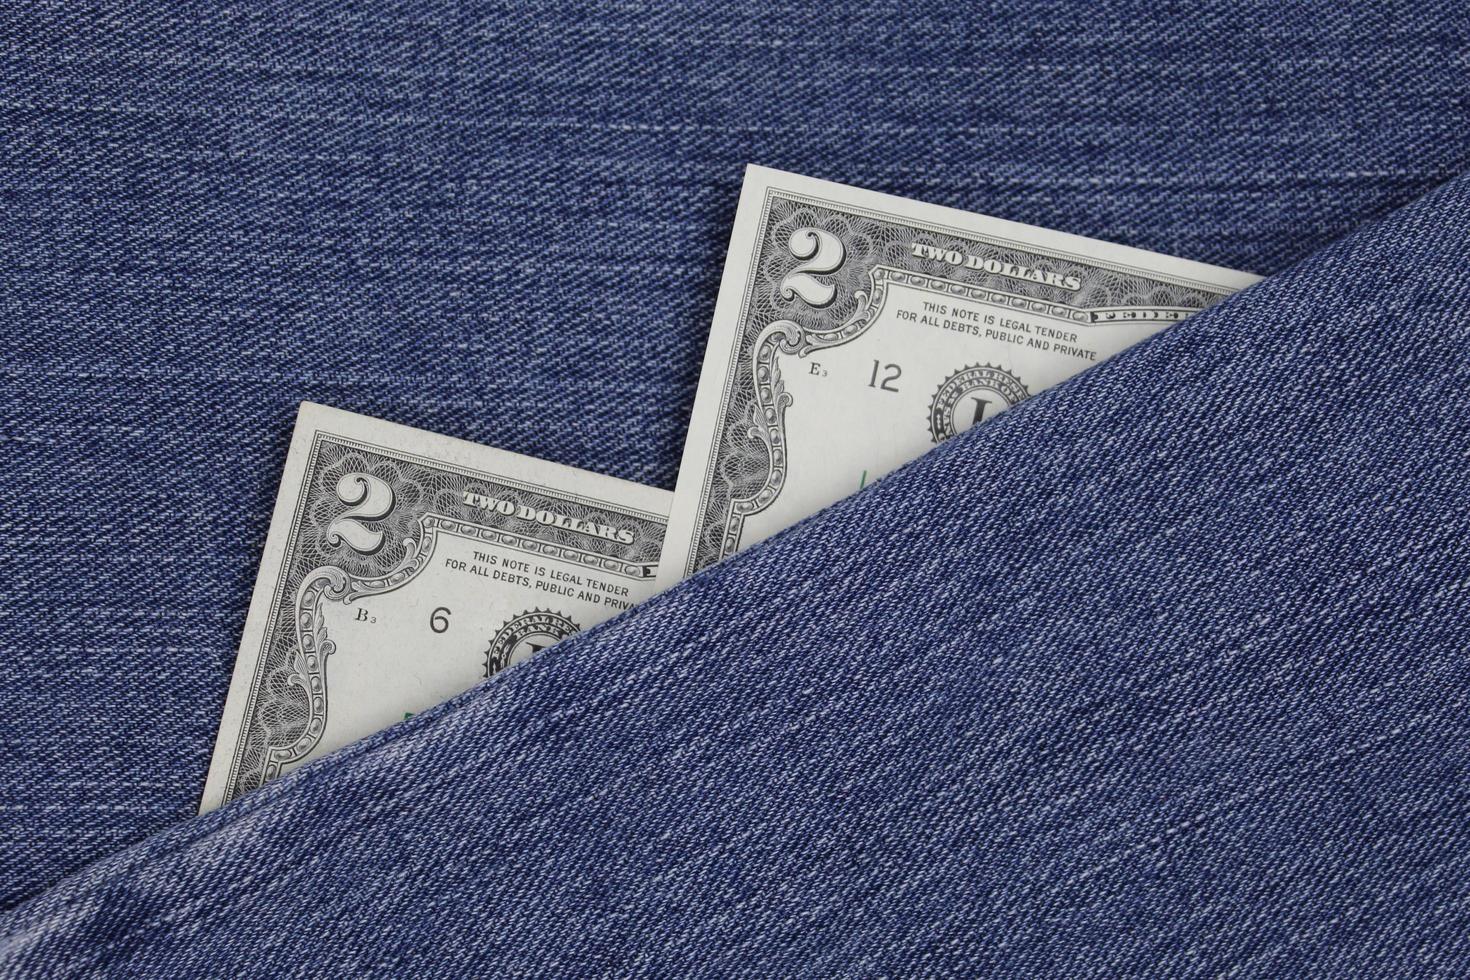 amerikanska sedlar på två dollar mellan blått denimtyg foto